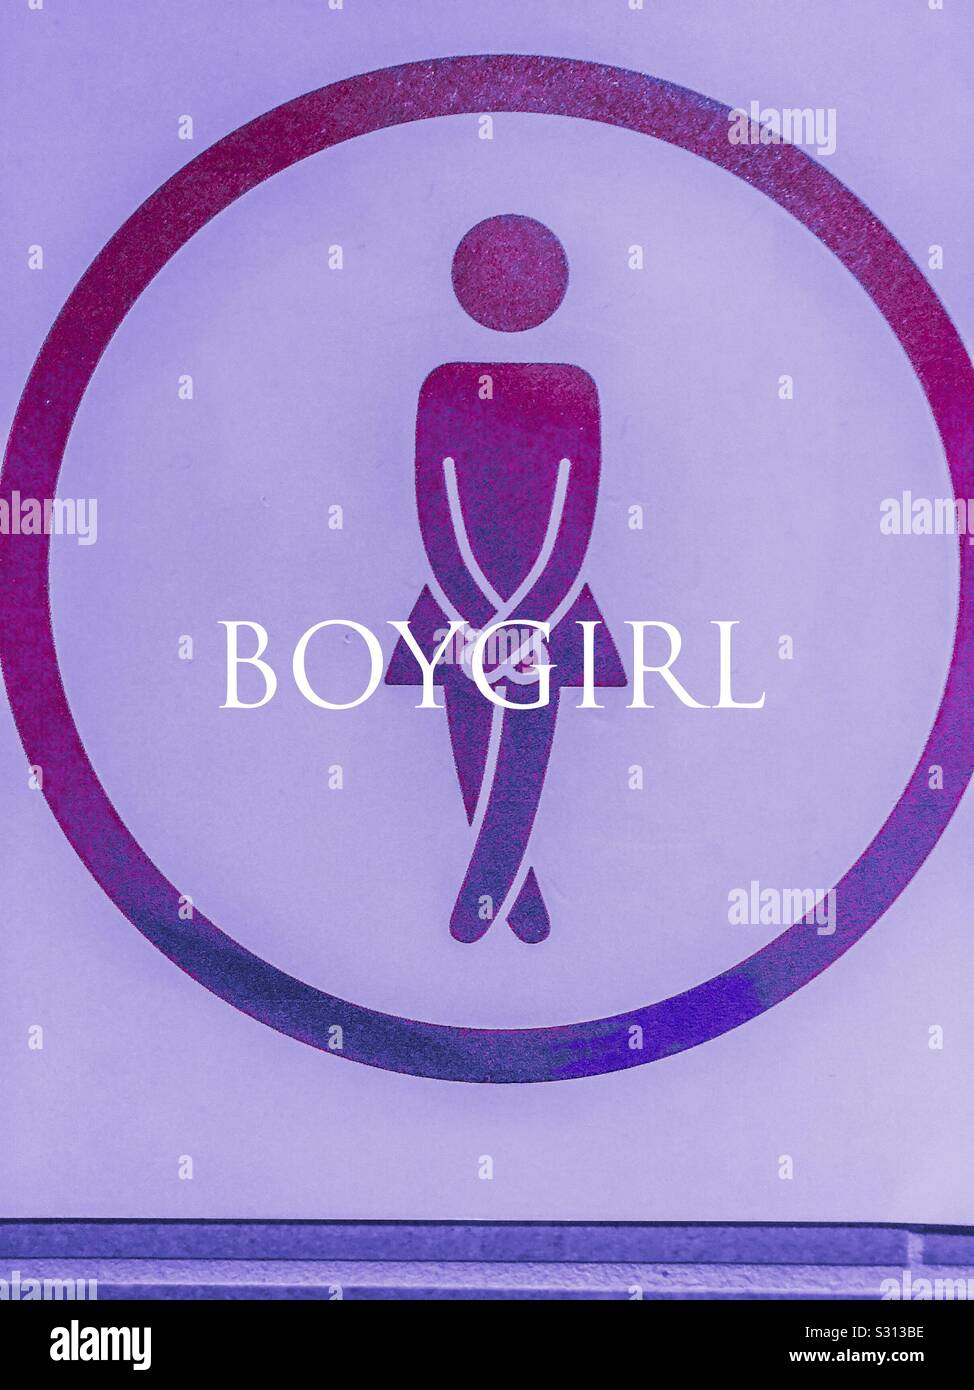 Simbolo di sesso fluido, che combina le tradizionali tonalità di blu e rosa. Questo potrebbe essere Boy-Girl o Girl-Boy o Trans o non-binario. All inclusive. Foto Stock